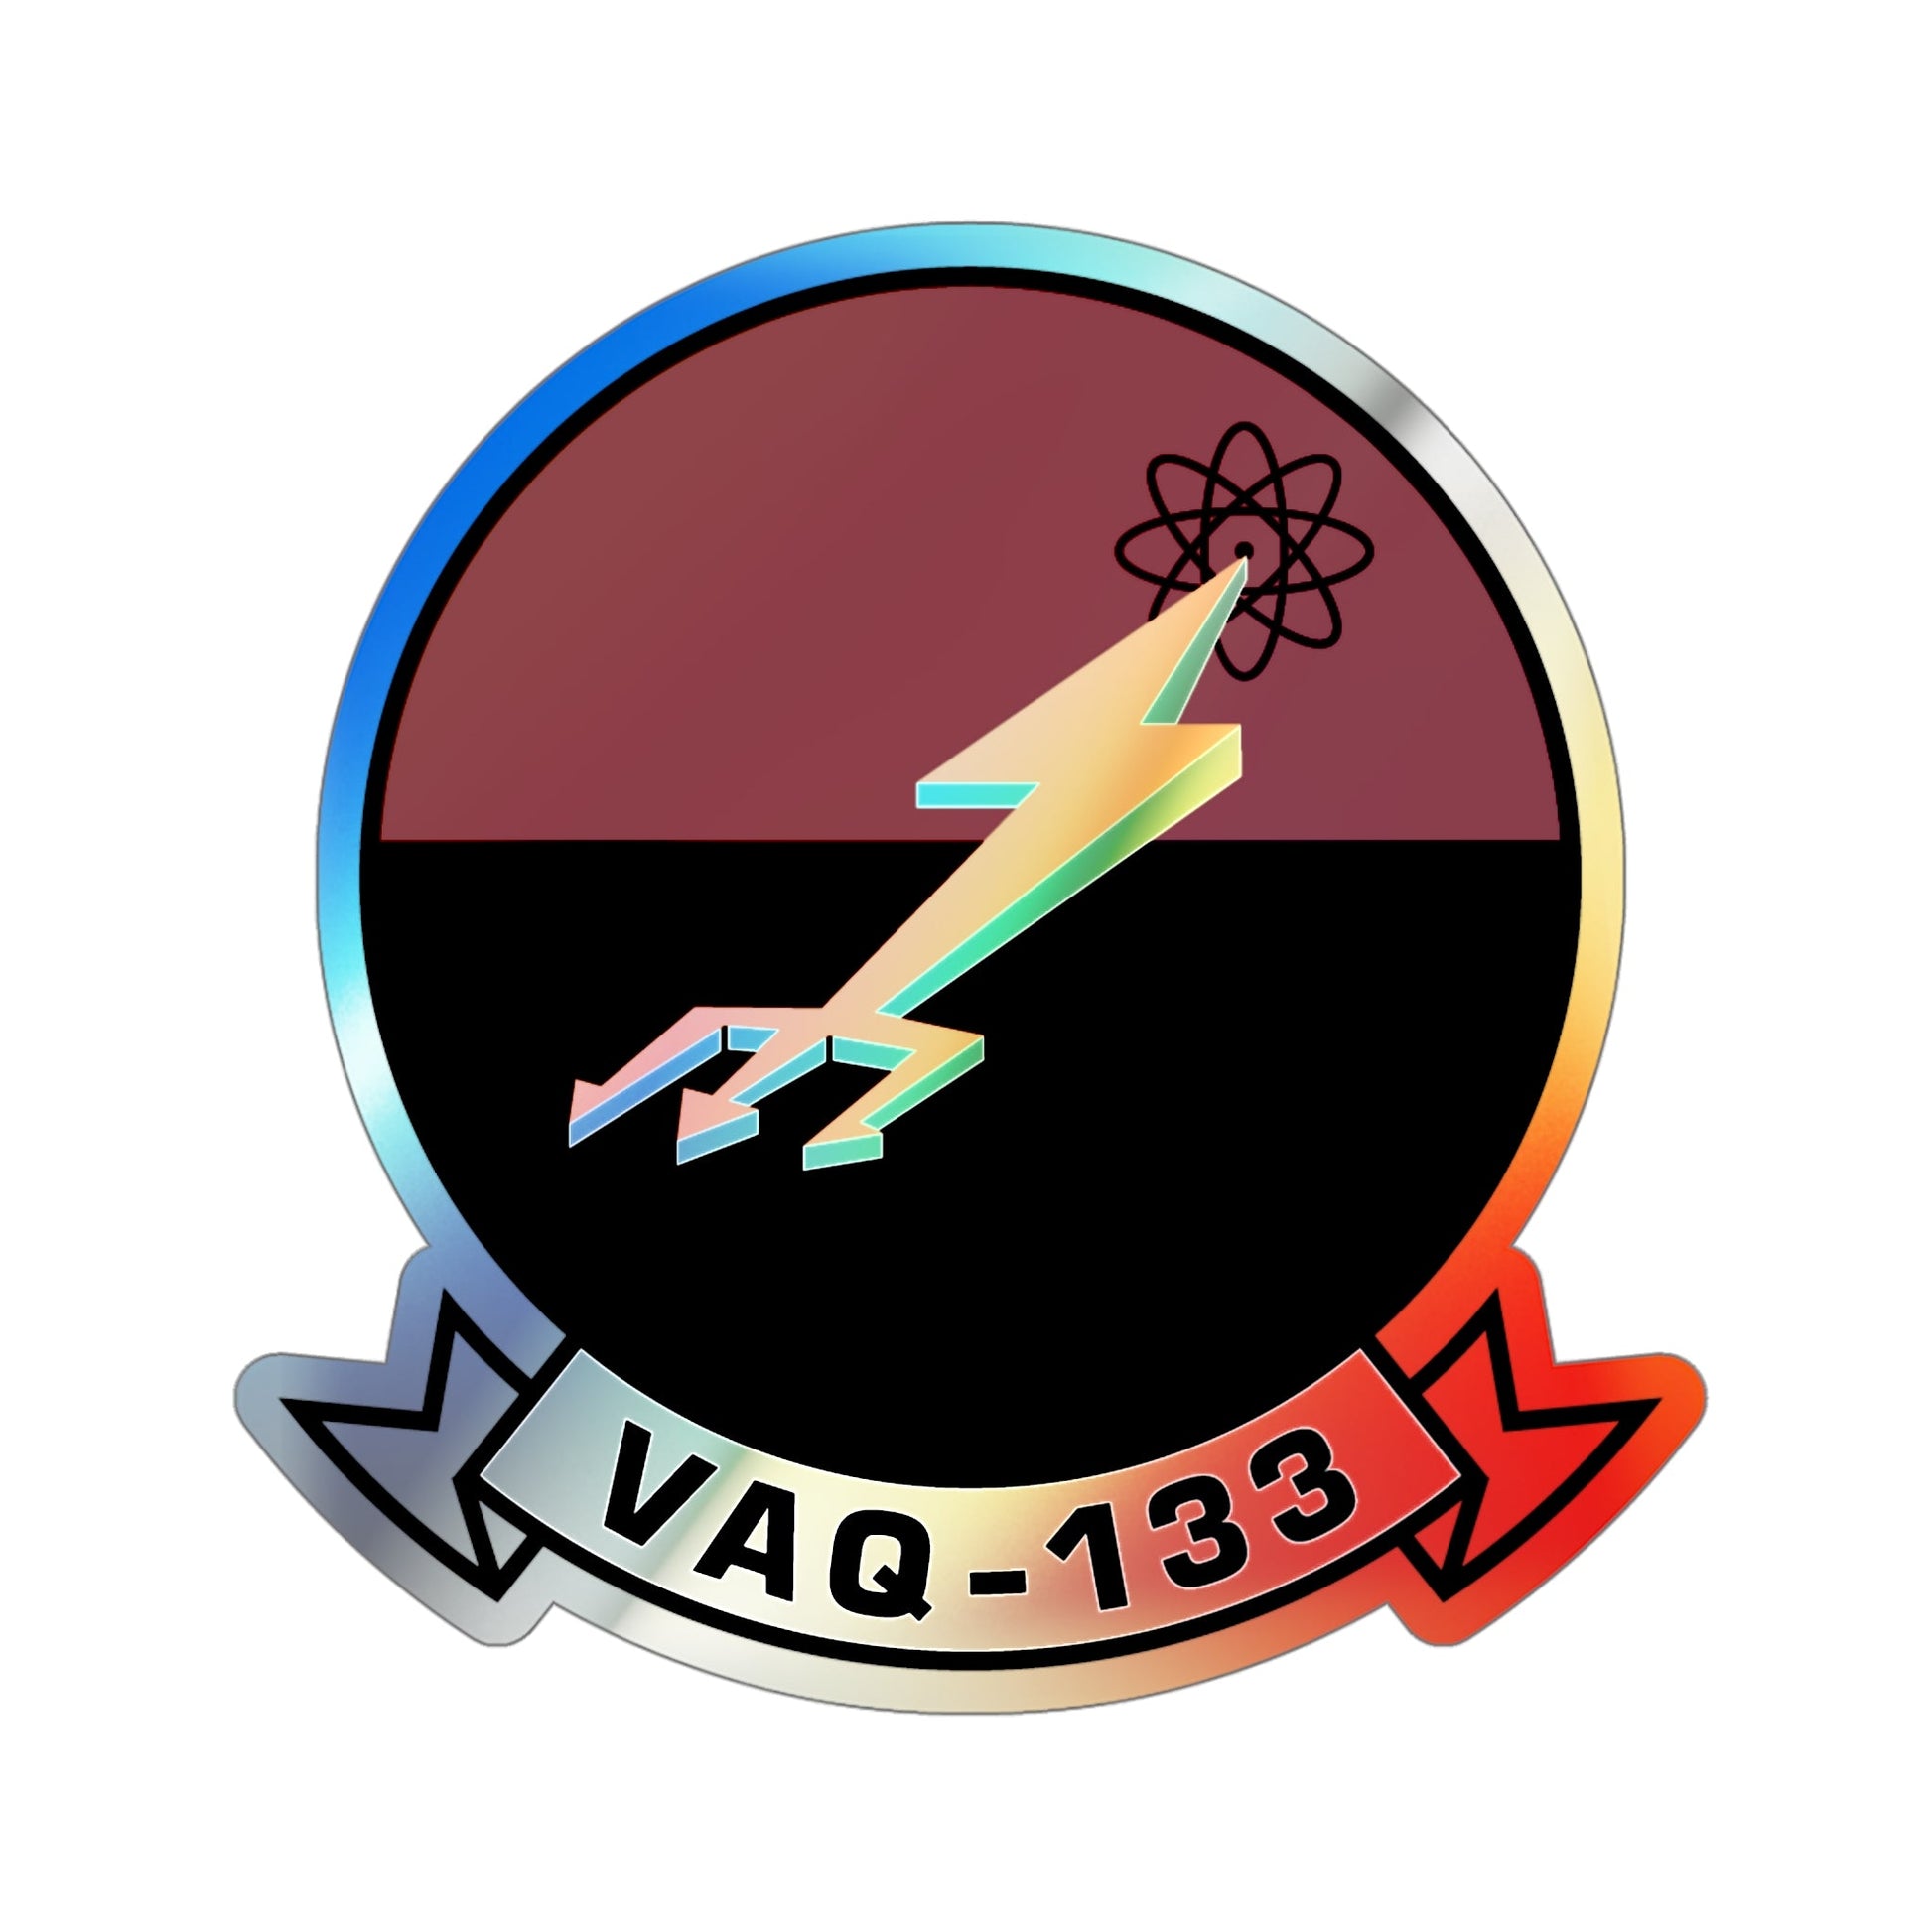 VAQ 133 (U.S. Navy) Holographic STICKER Die-Cut Vinyl Decal-5 Inch-The Sticker Space